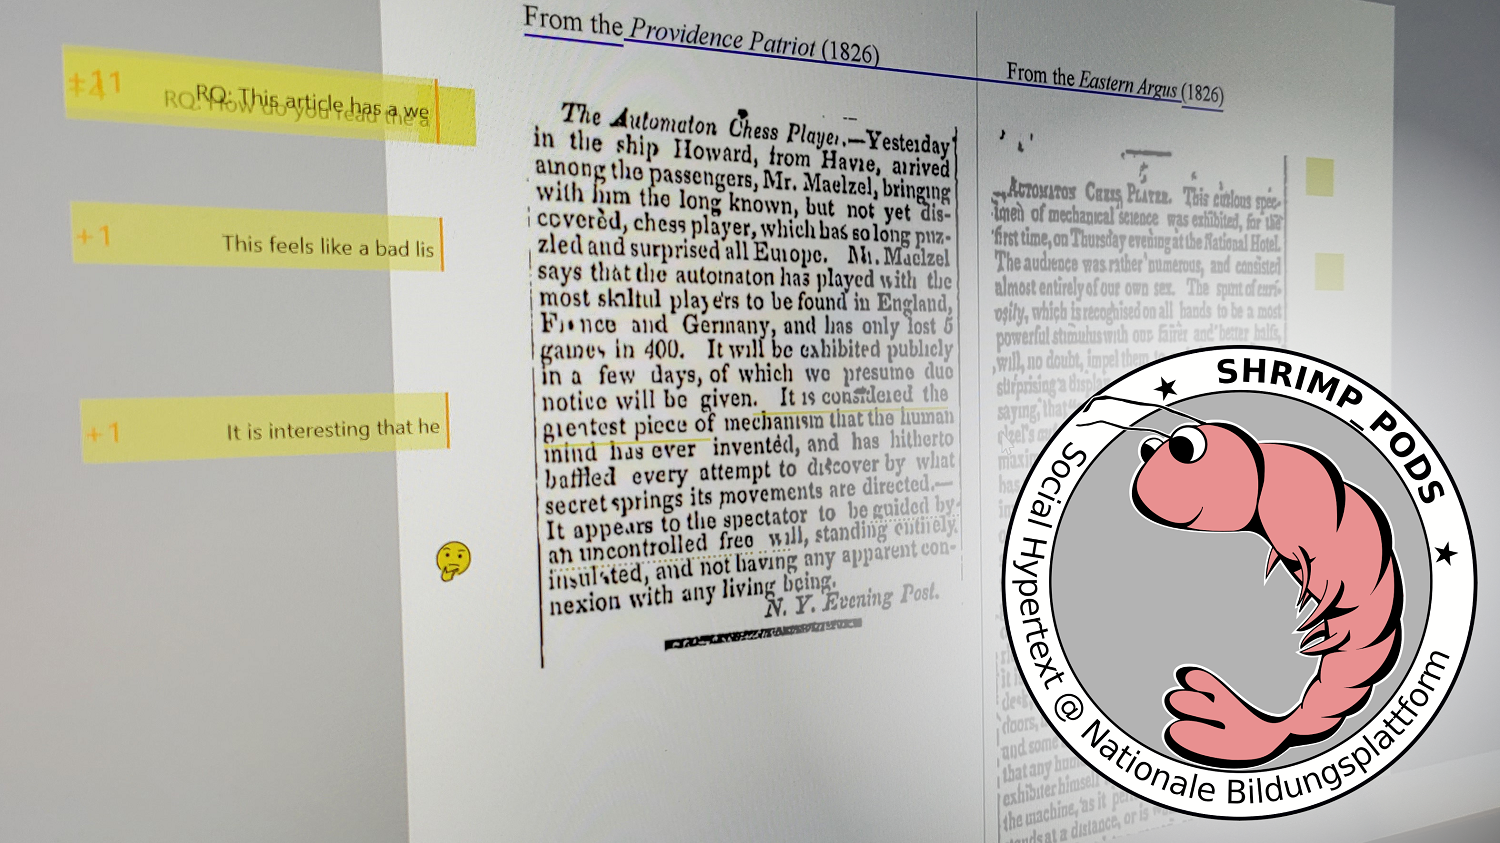 Das Bild zeigt einen gedruckten zweispaltigen Text mit gelben Markierungen. Im rechten Bereich befindet sich das Logo von SHRIMP_PODS